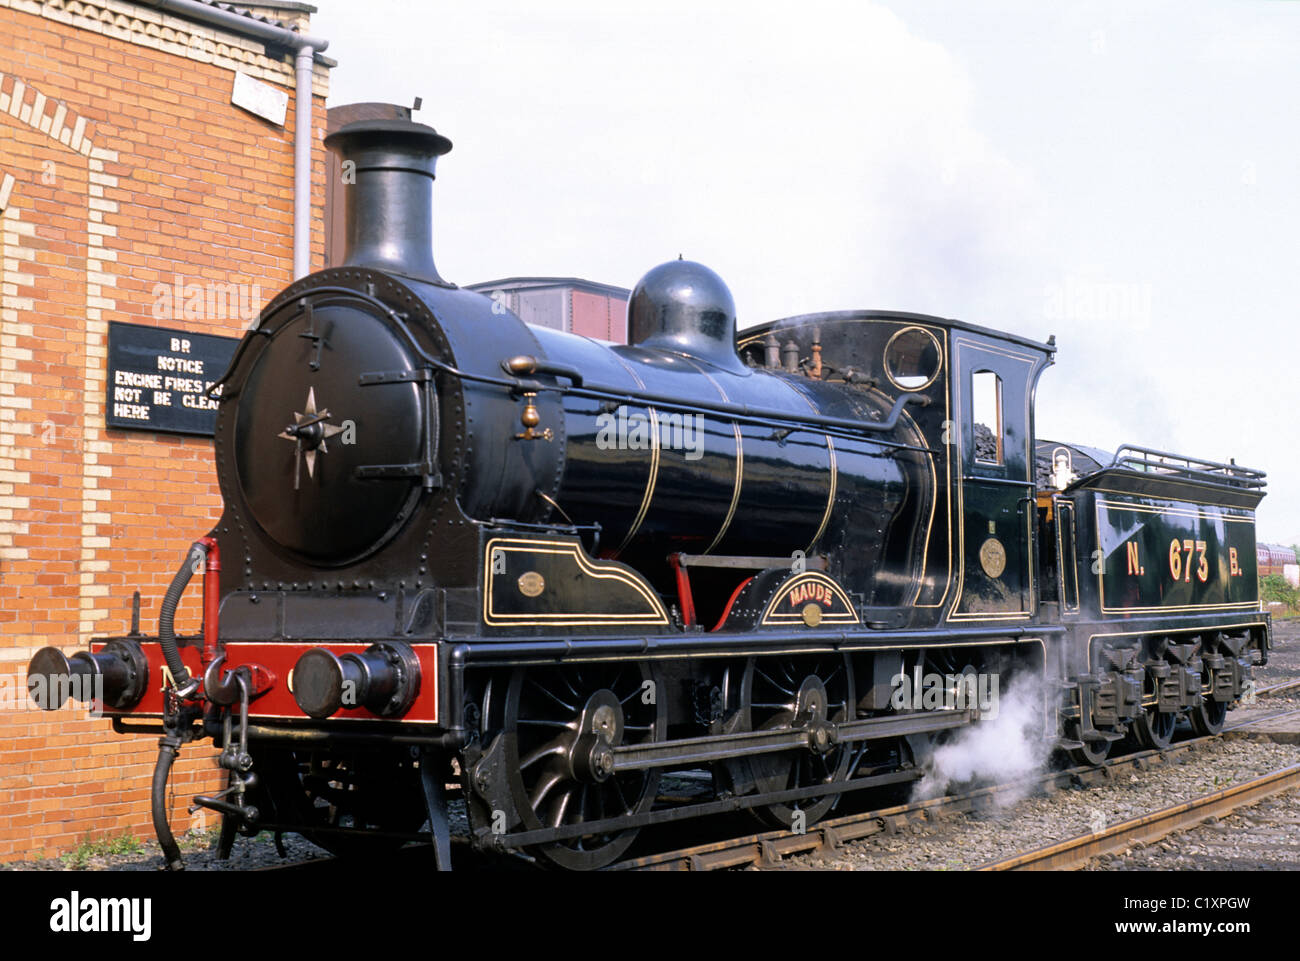 La gare de Bo'ness, Maude moteur à vapeur, l'Écosse Royaume-Uni Scottish Railways Chemin de fer train trains moteurs Banque D'Images